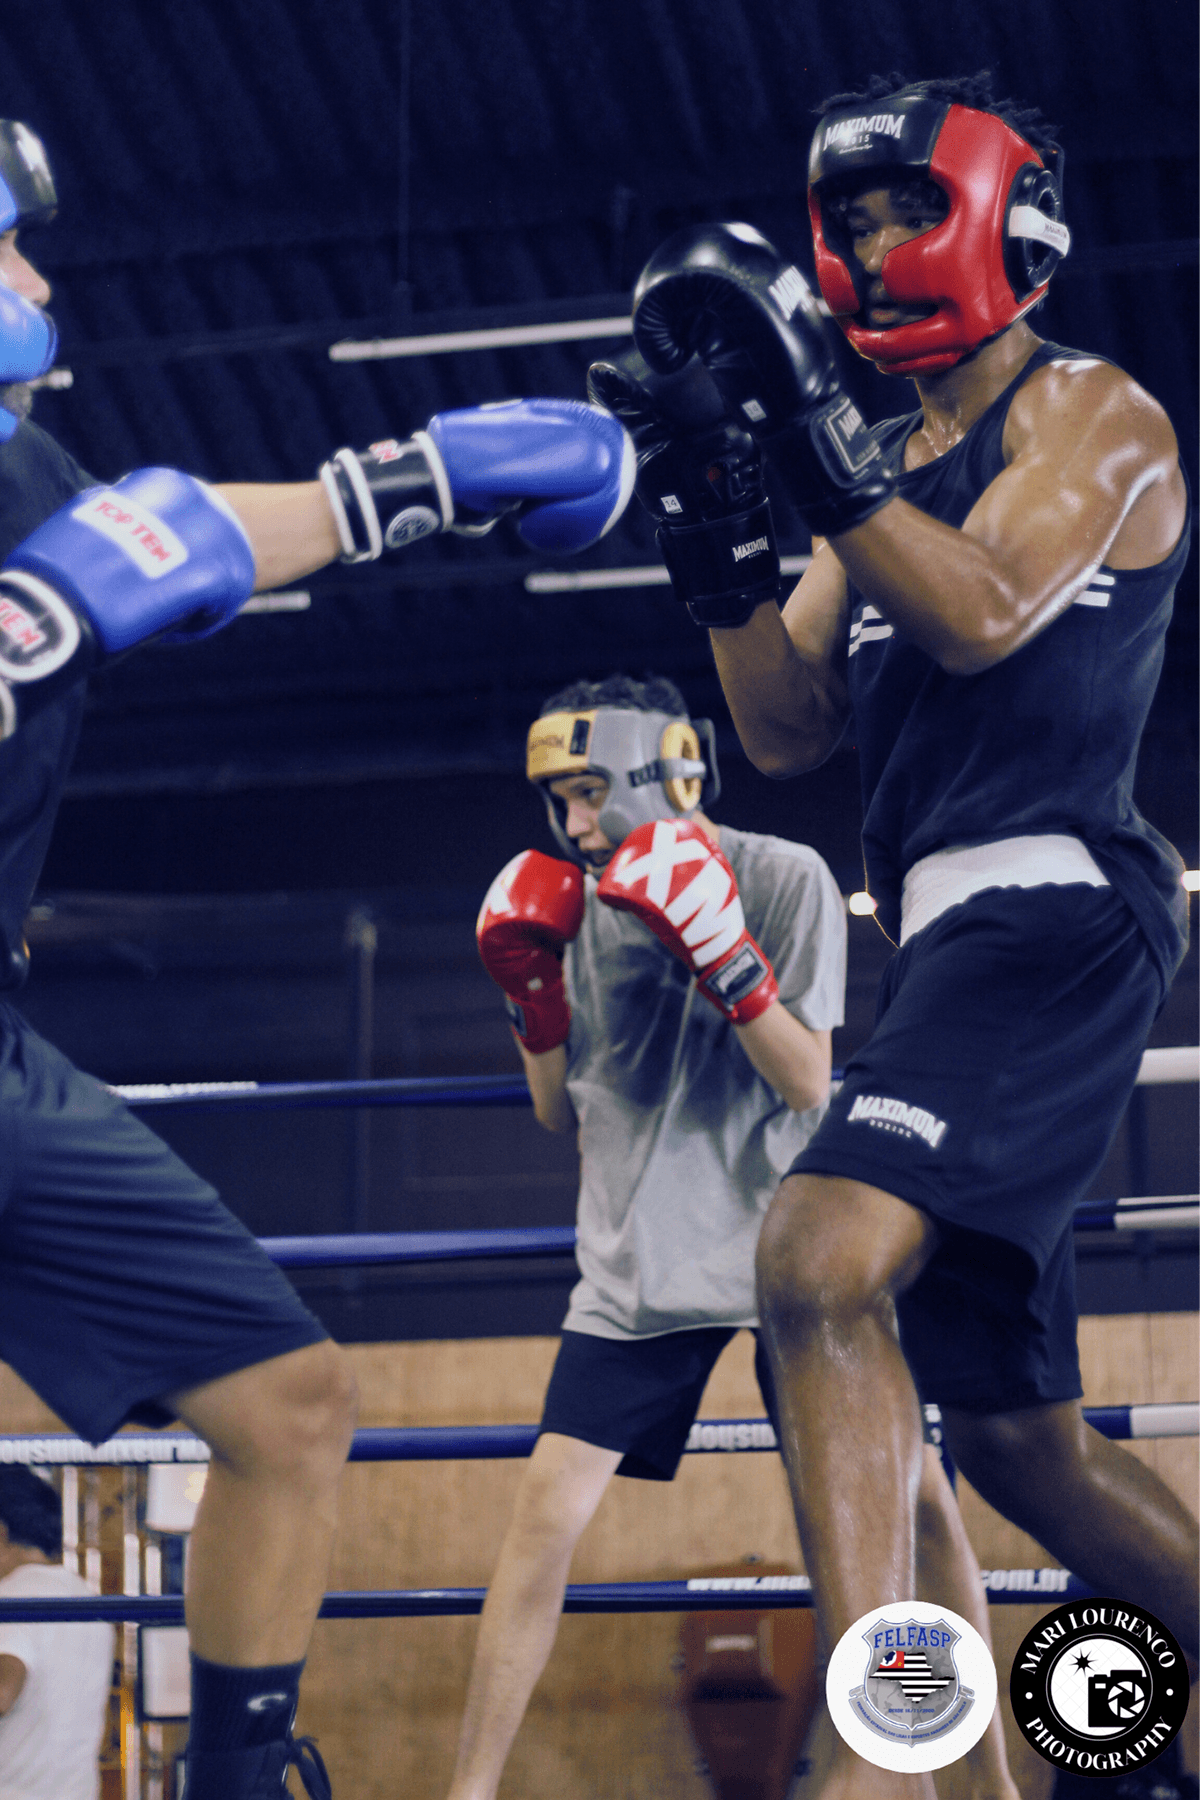 Fotografia Photography  Boxe sport esports treino jiu jitsu muay thai Martial Arts figth